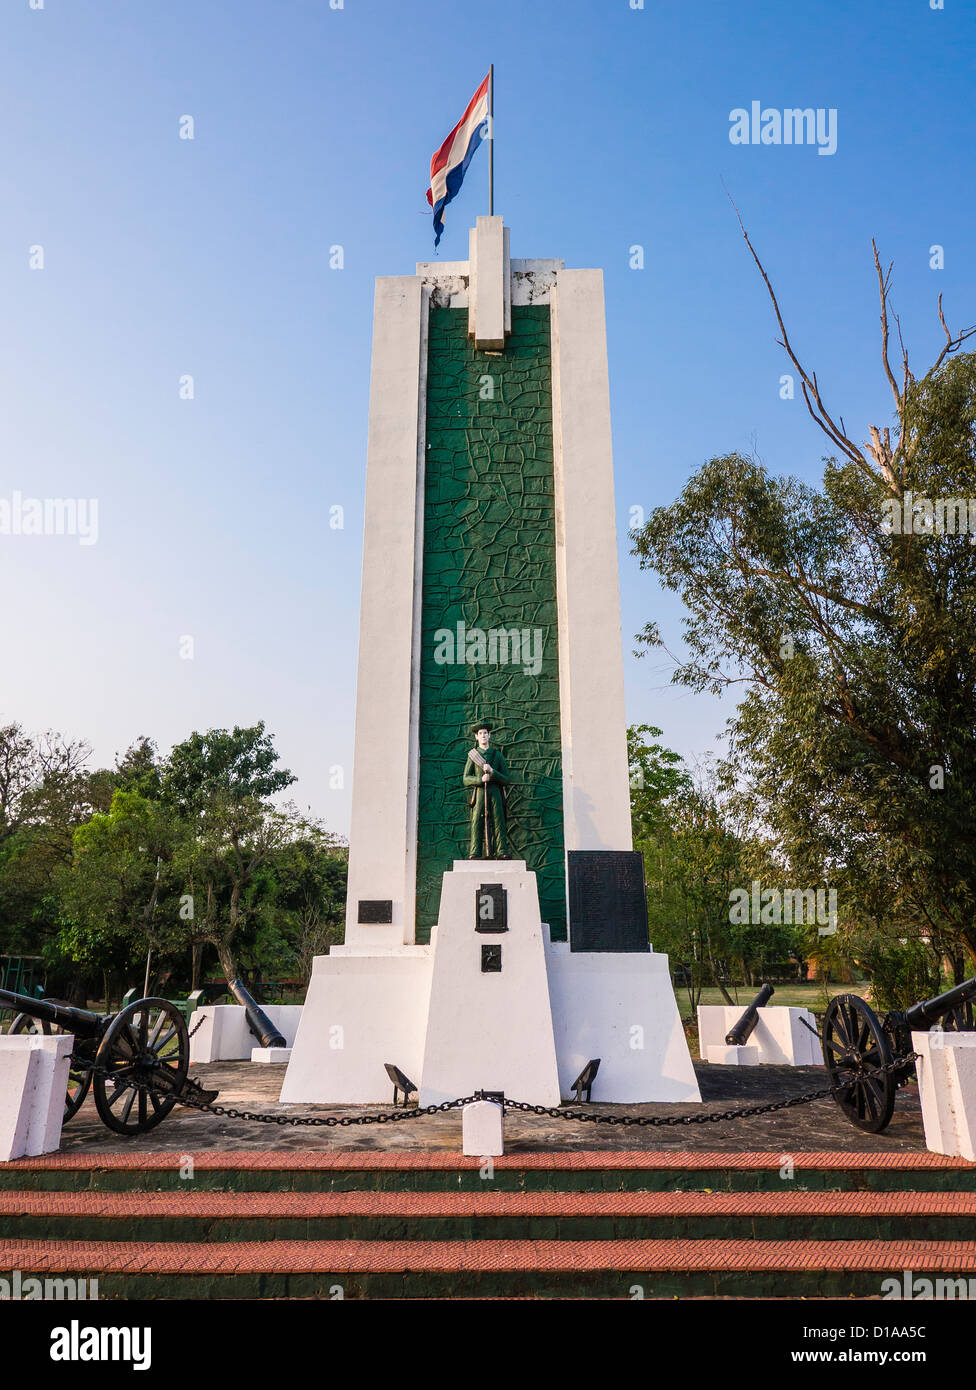 Un monumento a los Soldados que combatieron en el Paraguay las dos guerras mundiales, la guerra de la Triple Alianza y la Guerra del Chaco. Foto de stock